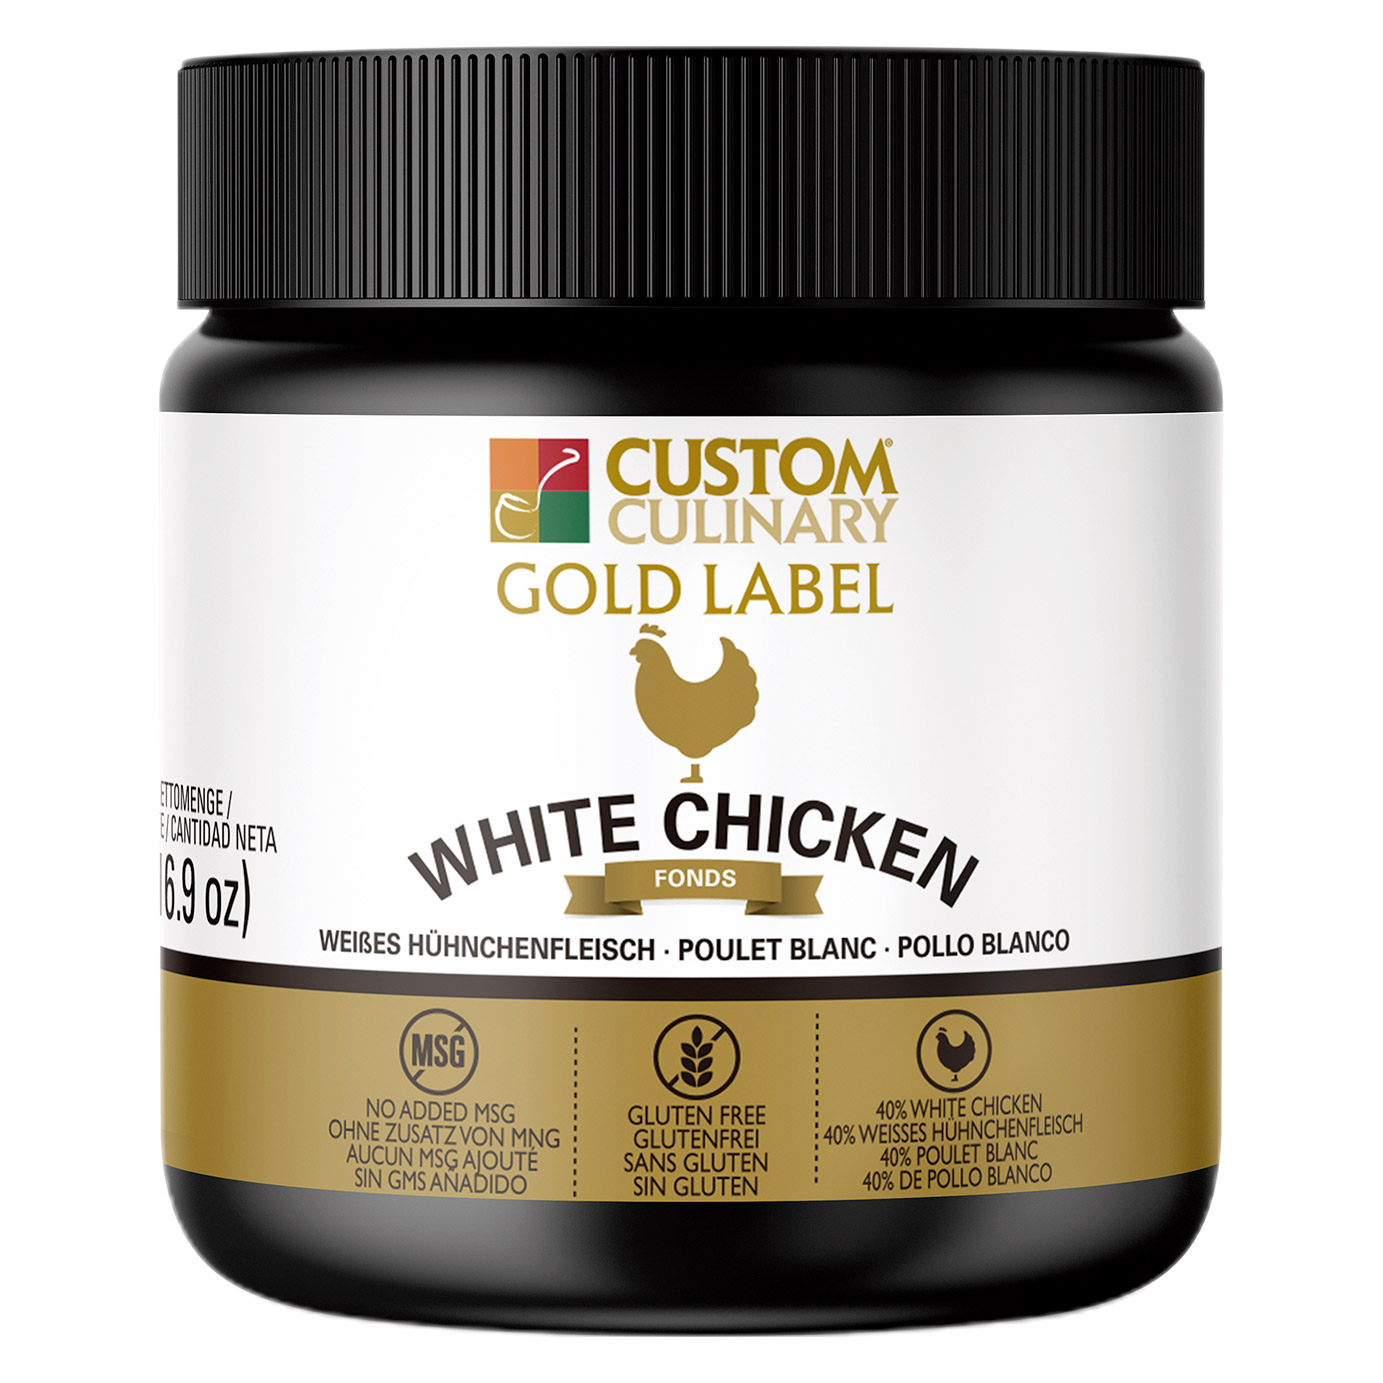 White Chicken